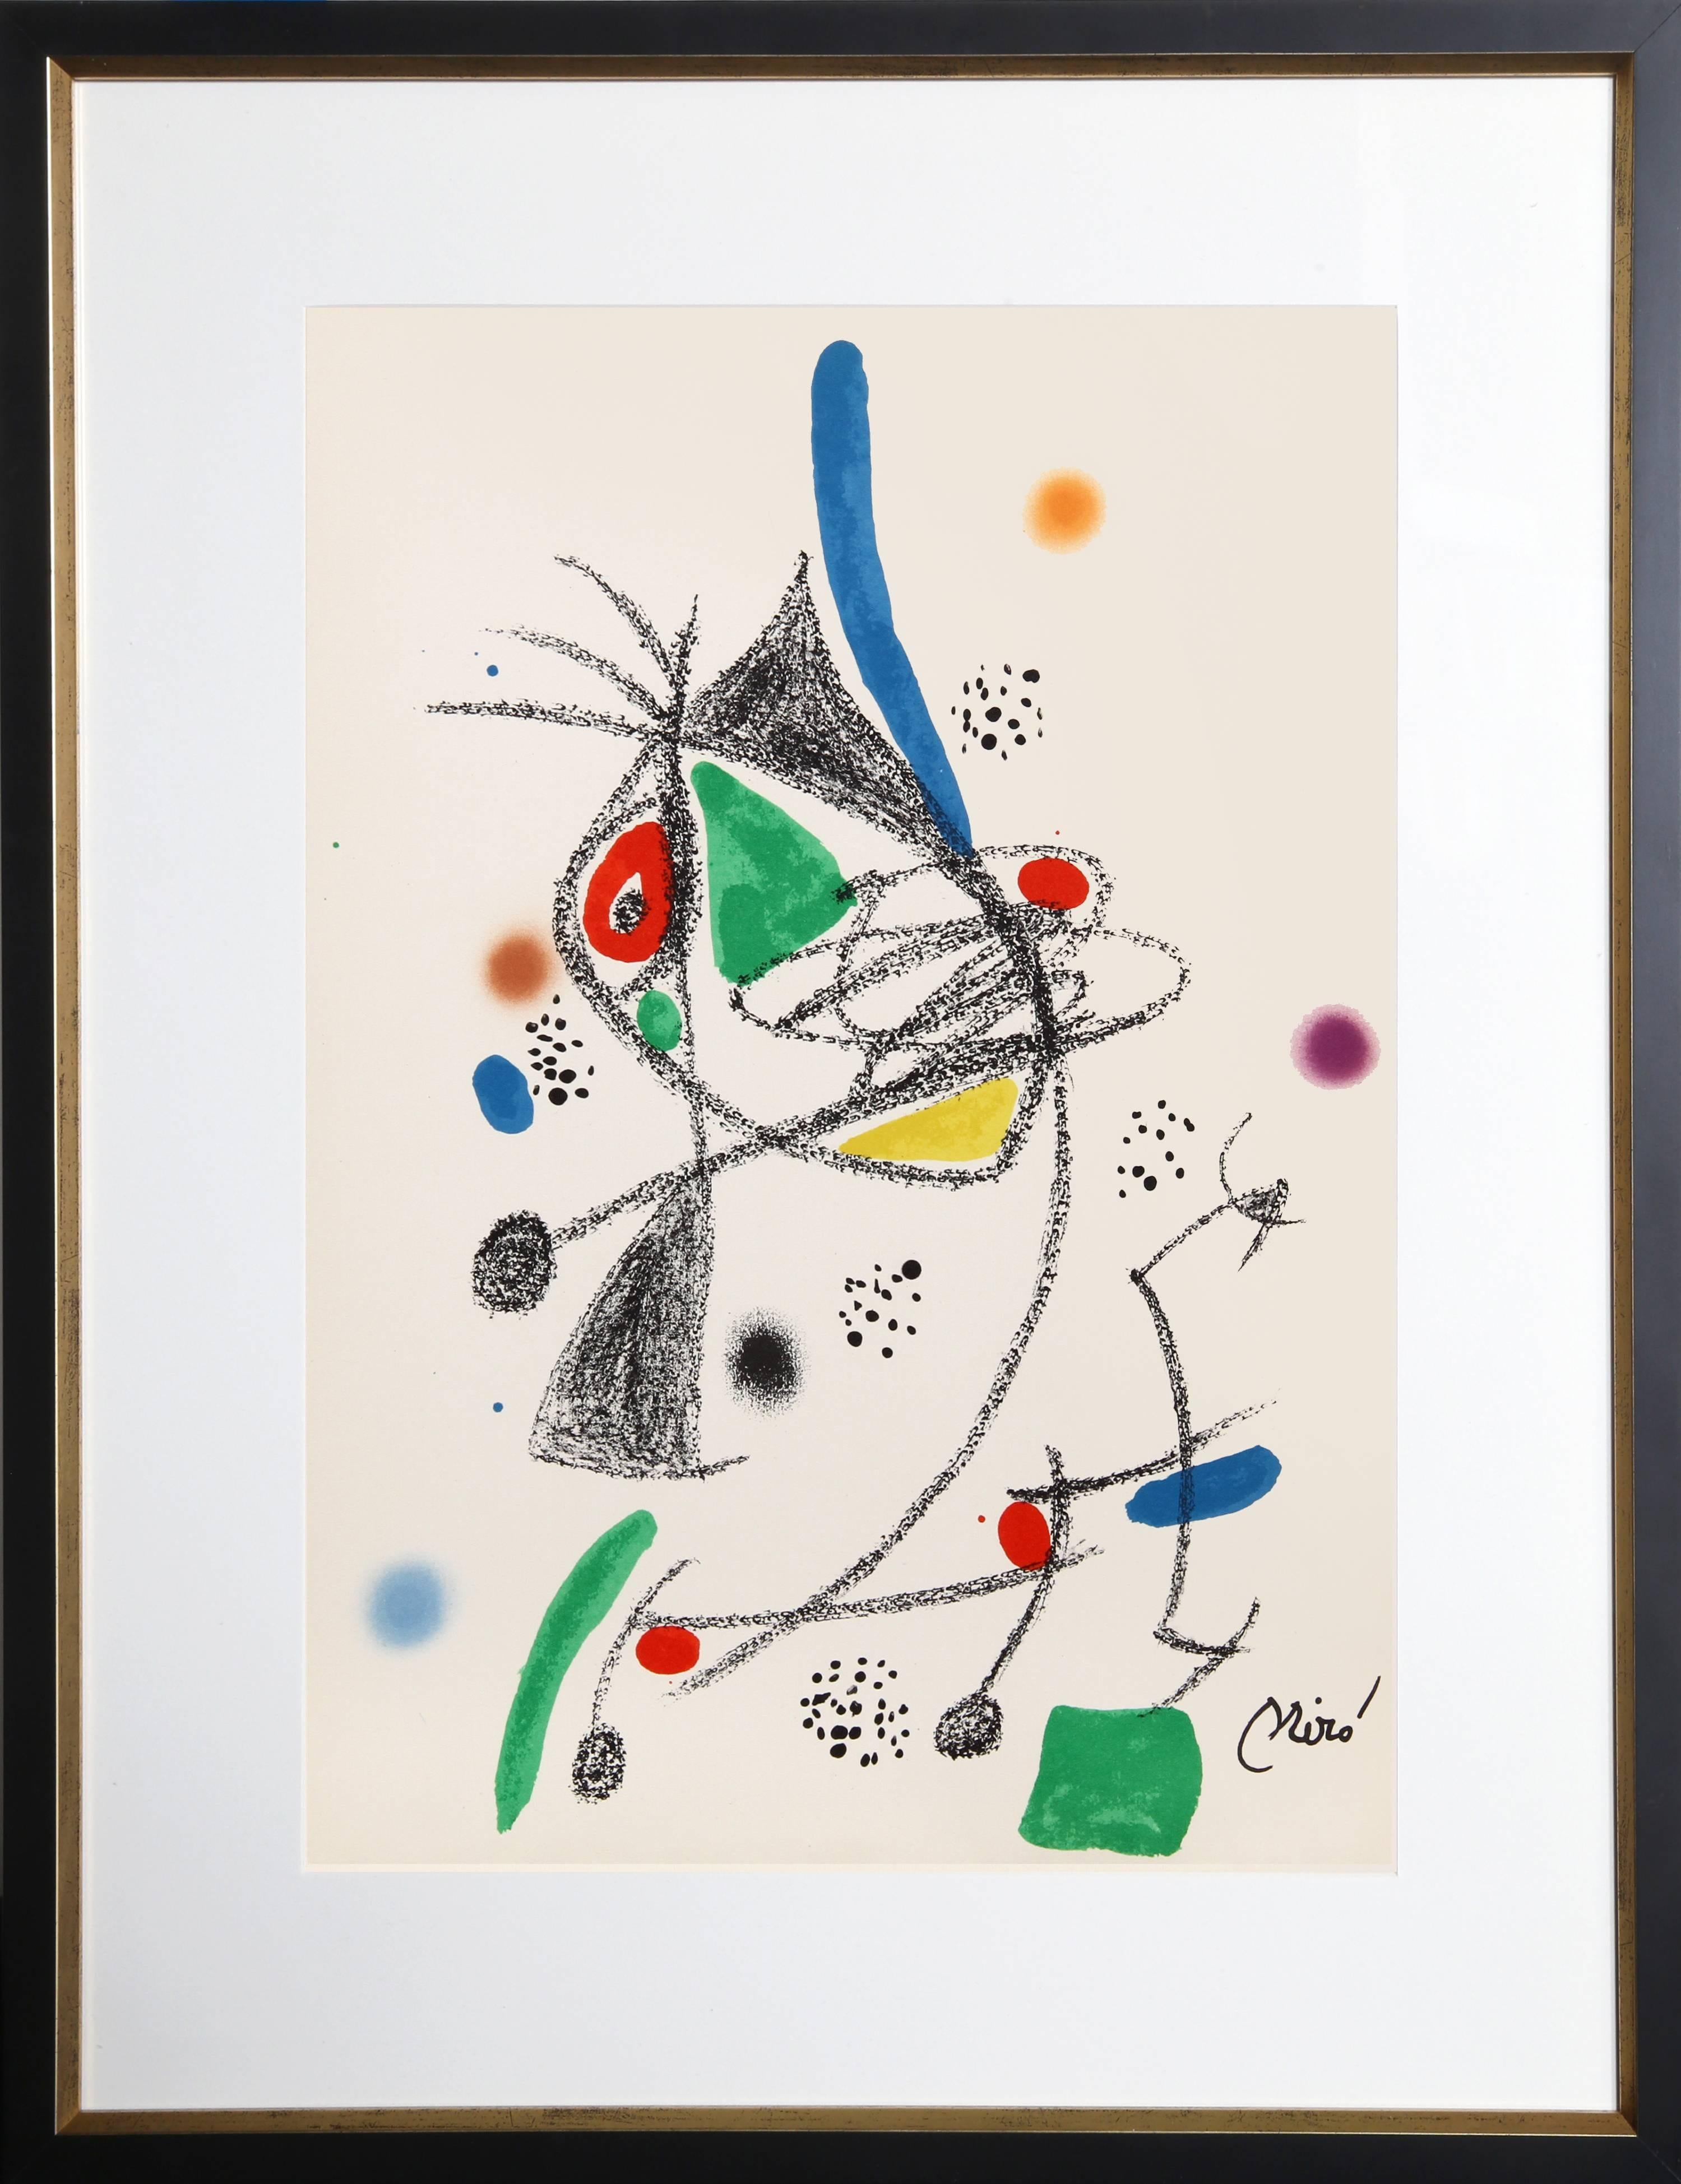 Abstract Print Joan Miró - Maravillas con Variaciones Acrosticas dans le Jardin de Miro (Number 6)